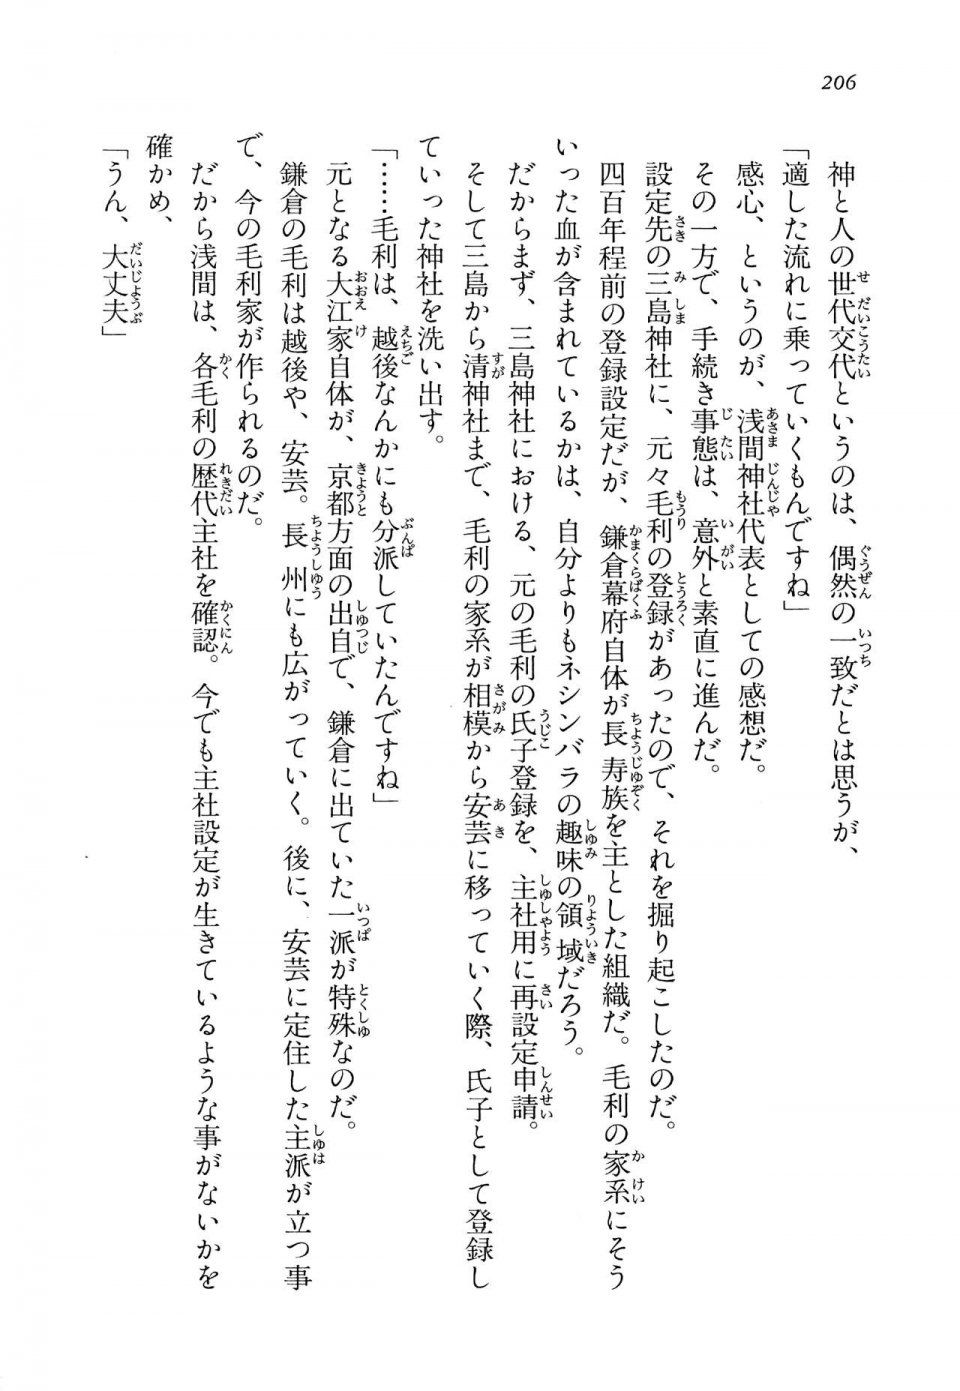 Kyoukai Senjou no Horizon LN Vol 14(6B) - Photo #206